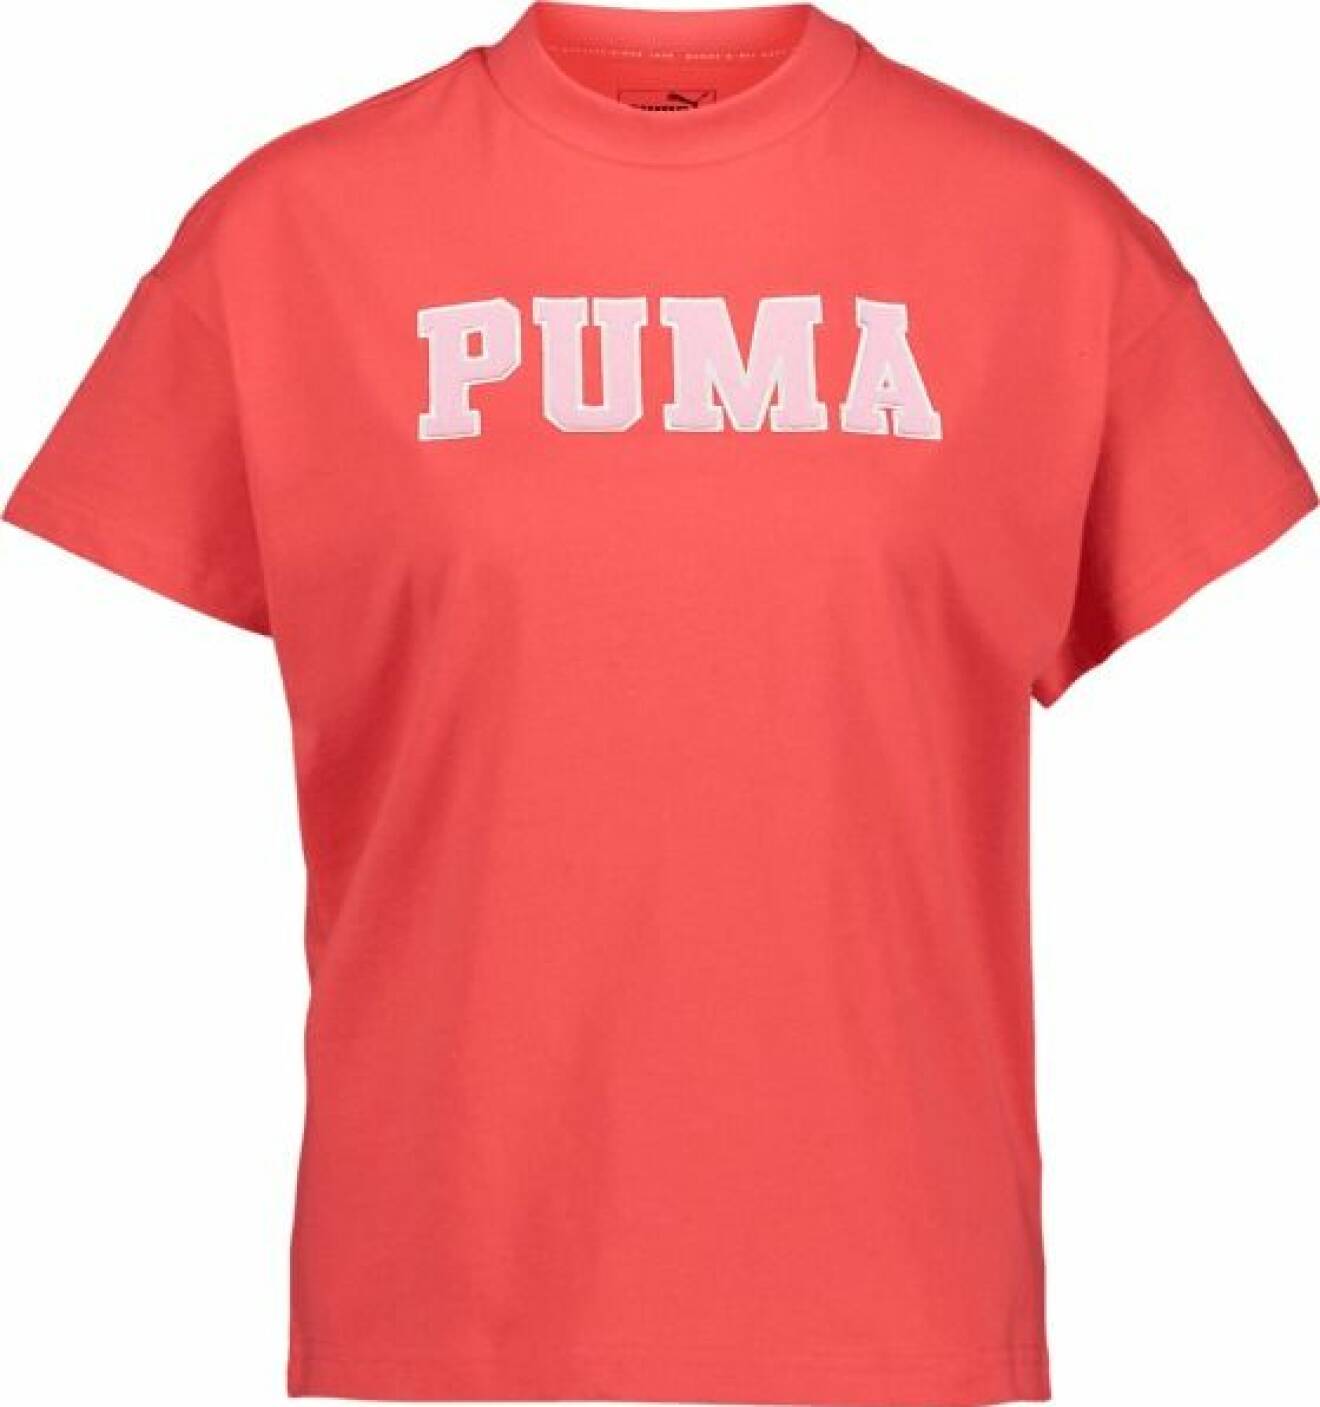 Röd t-shirt från puma